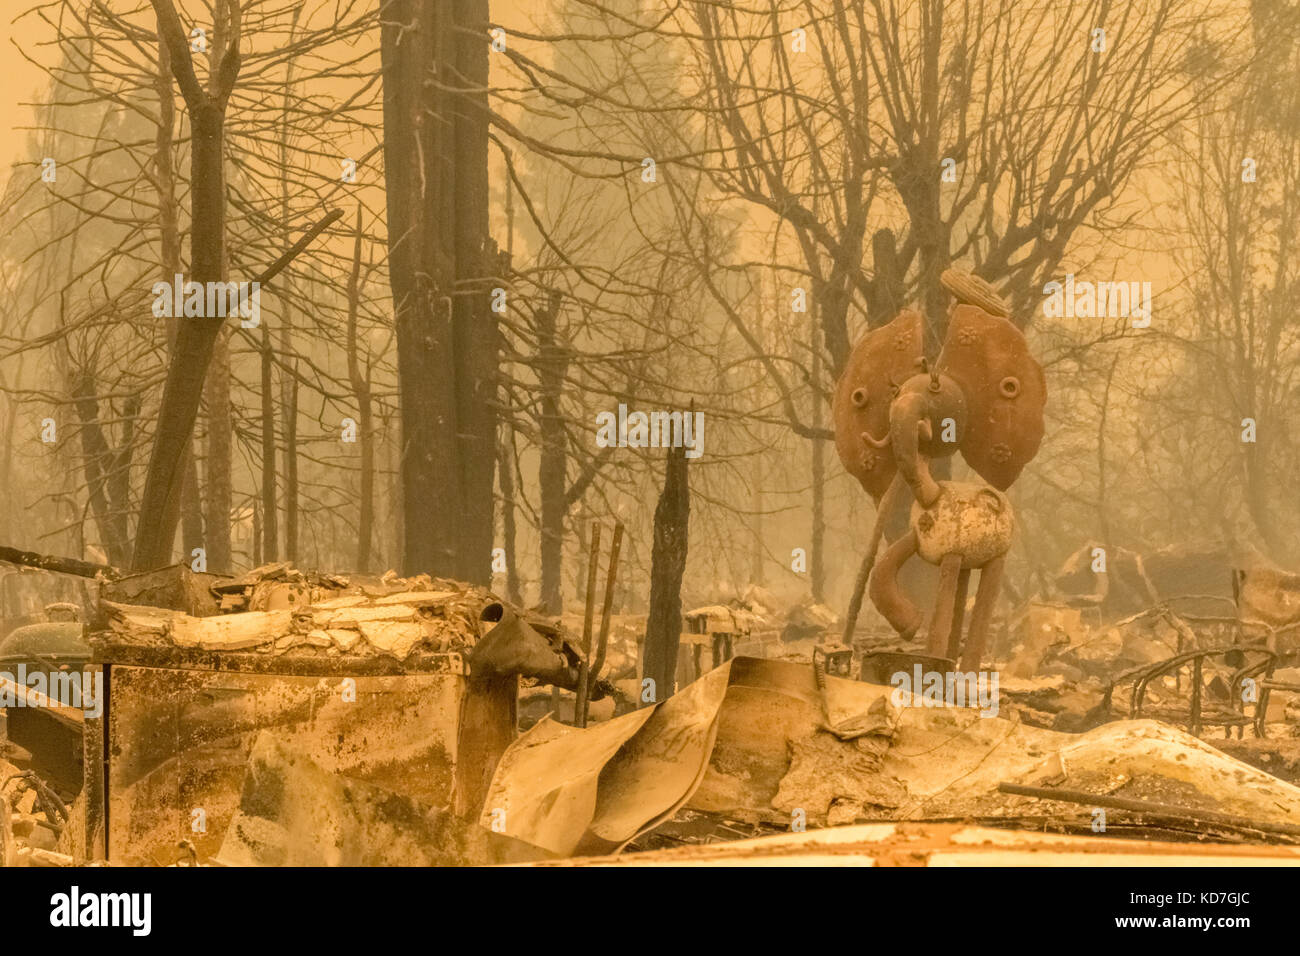 El condado de Sonoma, California, Estados Unidos. 9 oct, 2017. wildfire quema en varios condados en el norte de California. destrucción masiva. el condado de Sonoma, California, Estados Unidos, lunes 9 de octubre, 2017. devistation todo condado. Crédito: kathryn capaldo/alamy live news Foto de stock